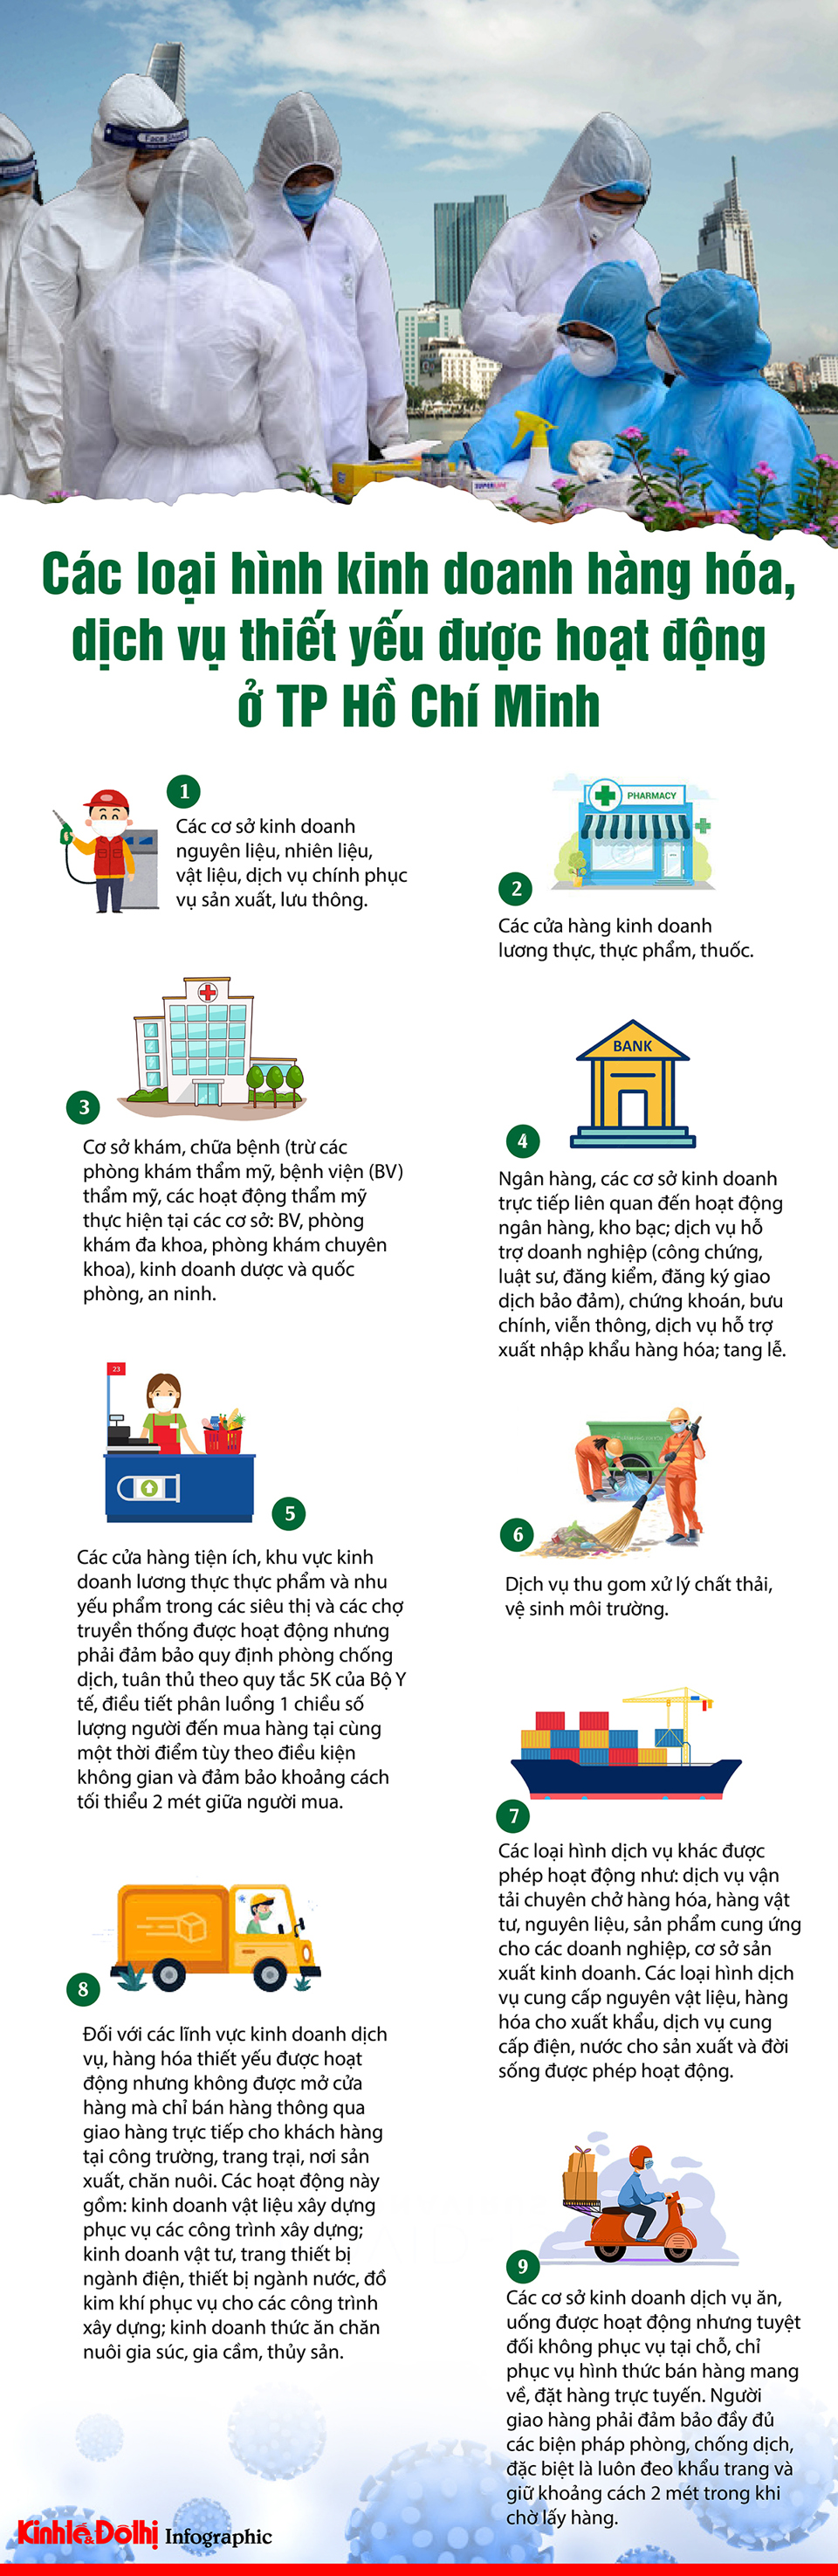 [Infographic] Các loại hình kinh doanh hàng hóa, dịch vụ thiết yếu được hoạt động ở TP Hồ Chí Minh - Ảnh 1